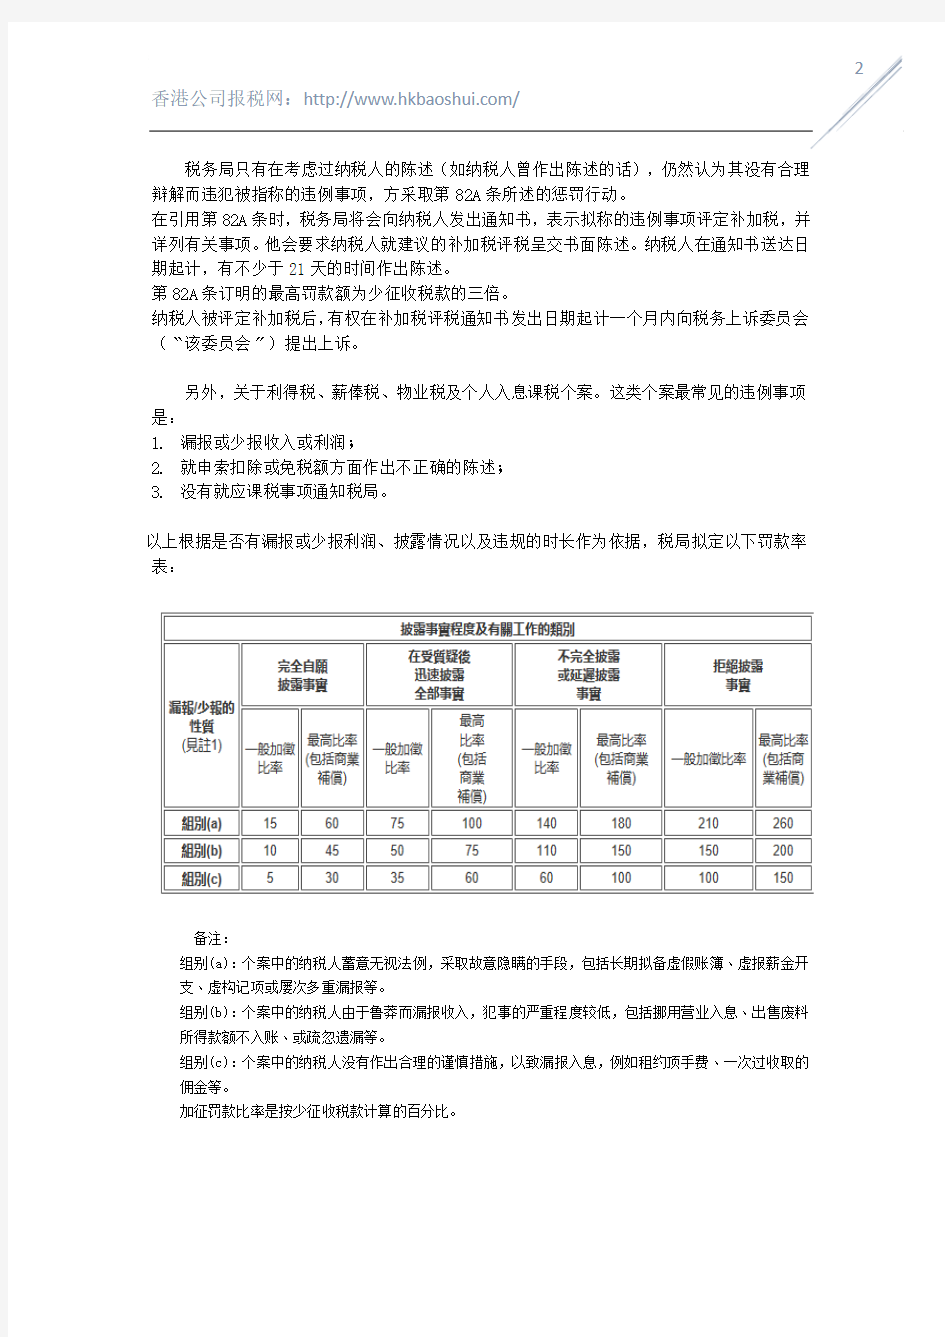 有关香港公司未遵守《税务条例》的惩罚规则